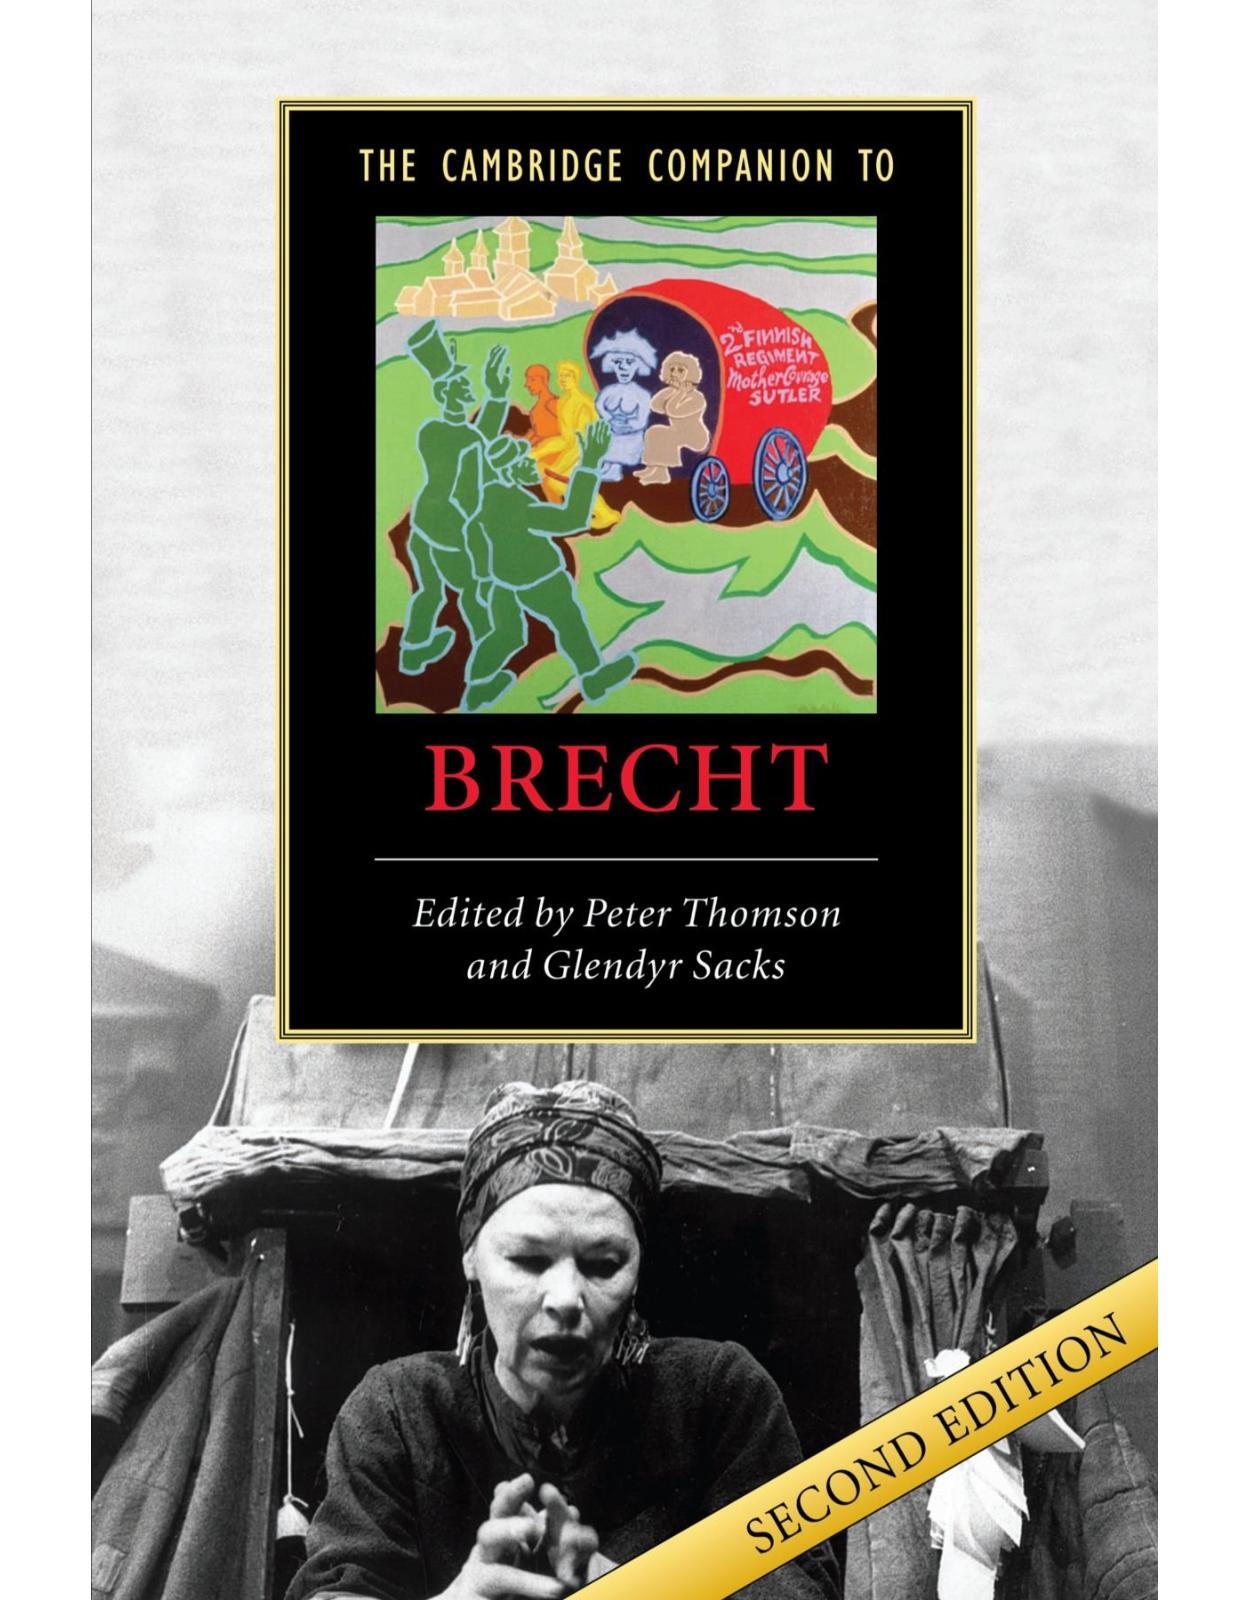 The Cambridge Companion to Brecht (Cambridge Companions to Literature)